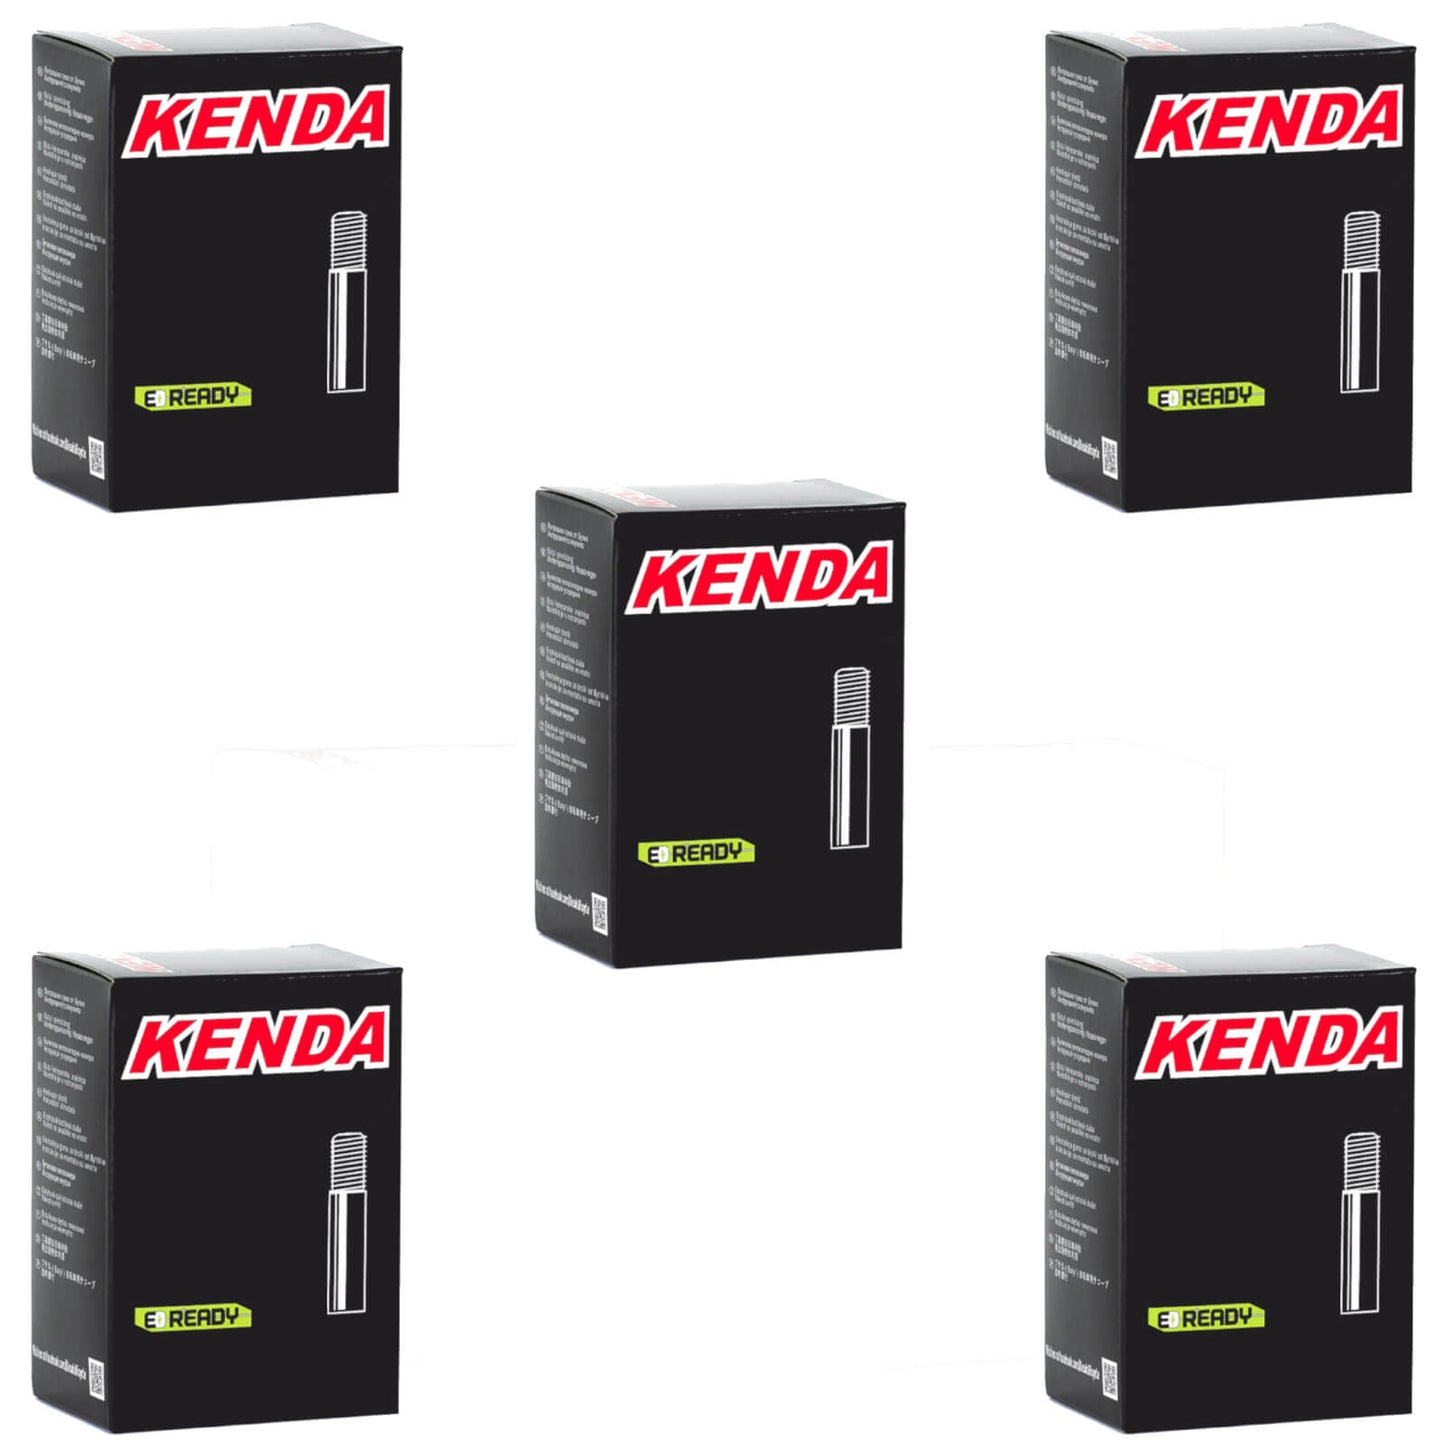 Kenda 27.5x1.9-2.125" 27.5 Inch Schrader Valve Bike Inner Tube Pack of 5